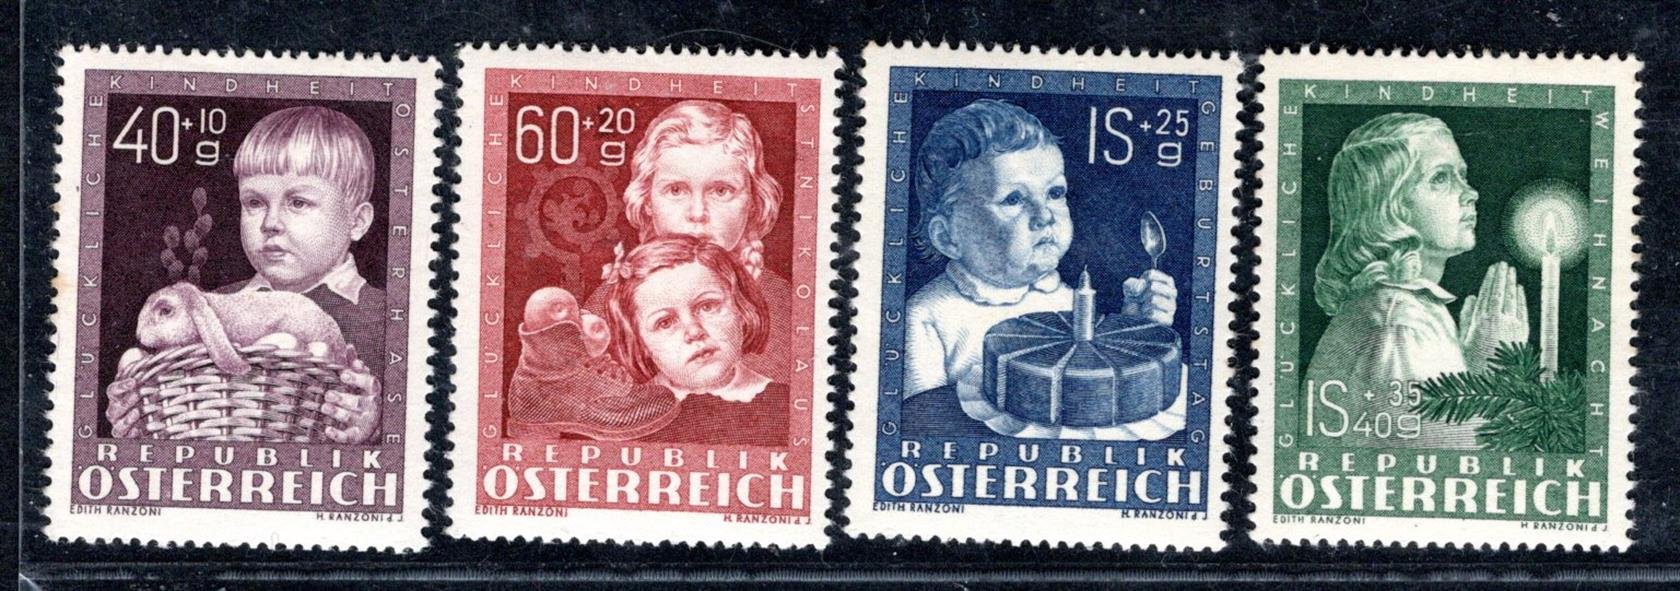 Rakousko - Mi. 929 - 32, Dětem svěží řada